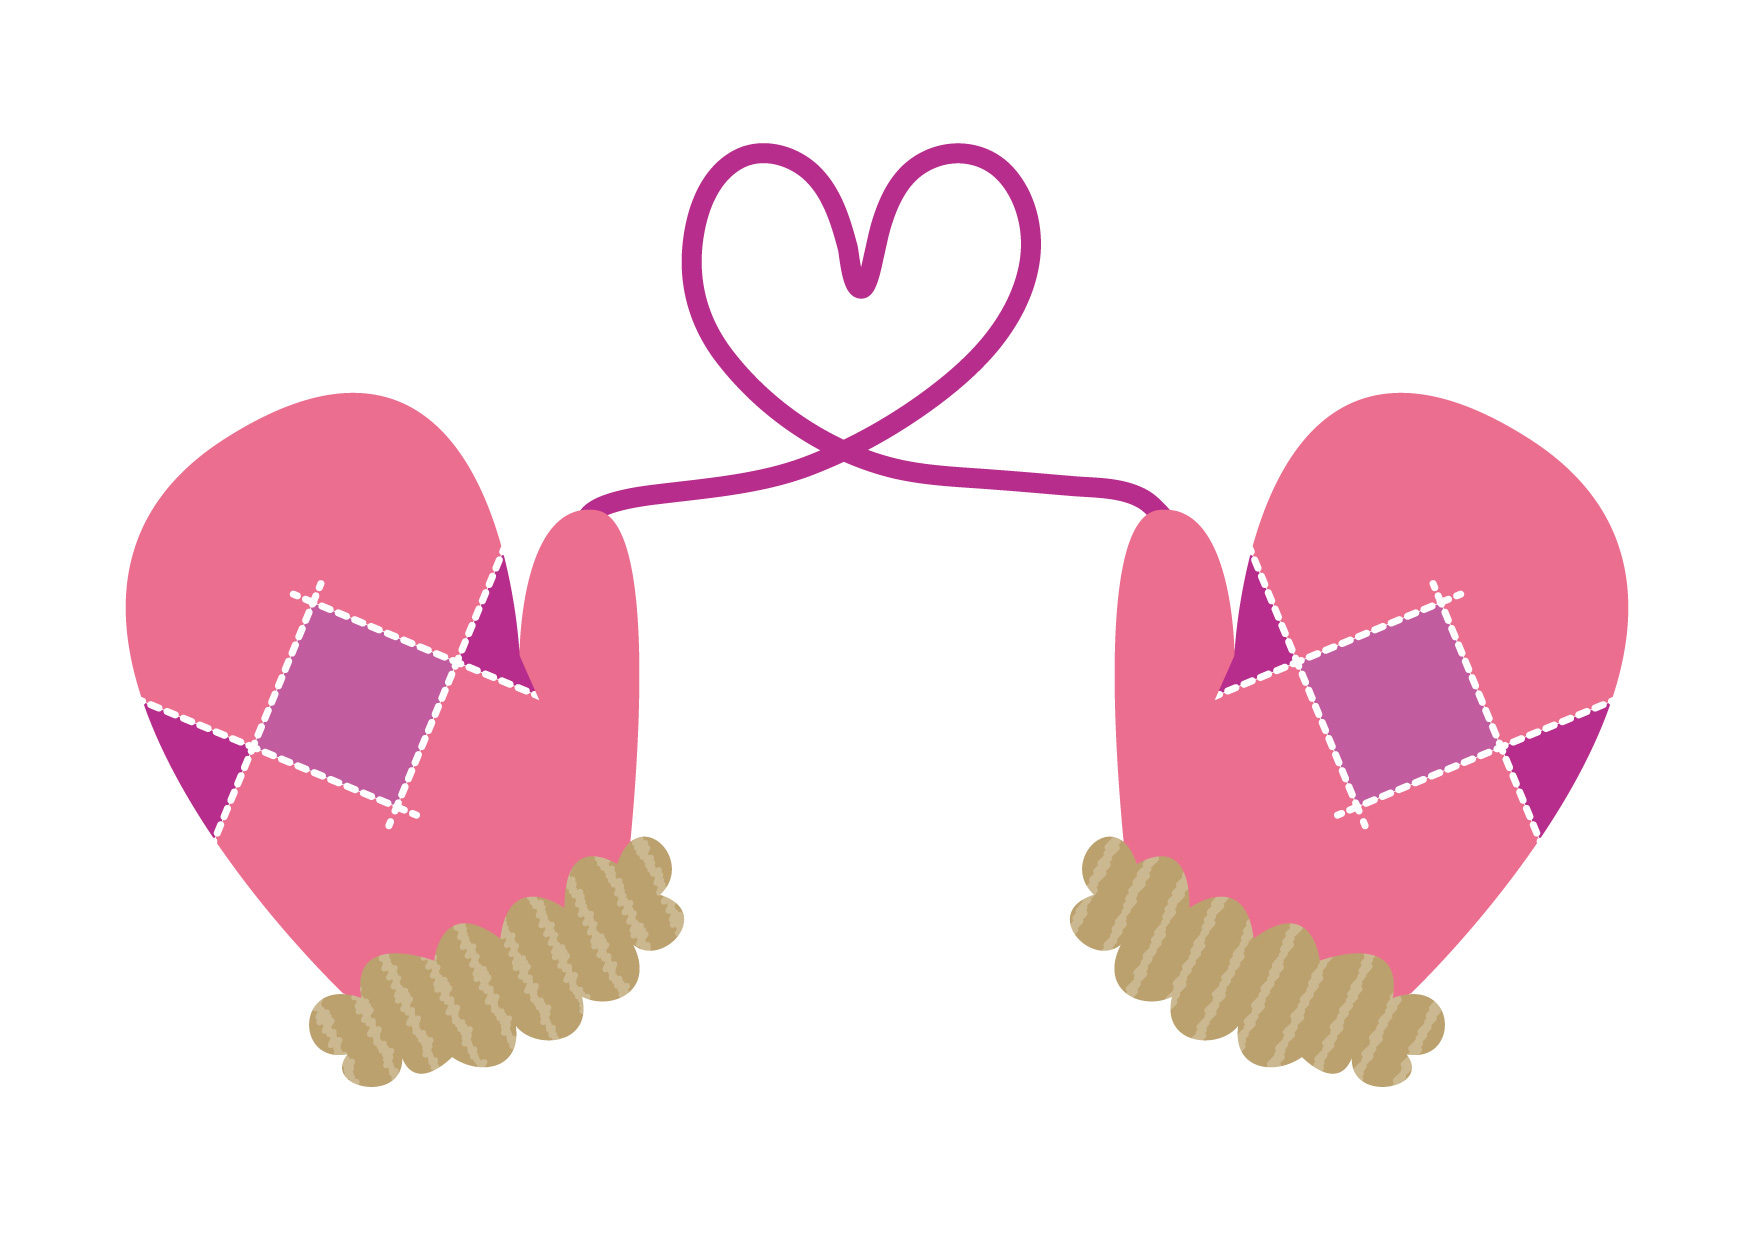 可愛いイラスト無料 手袋 ハート ピンク Free Illustration Gloves Heart Pink 公式 イラストダウンロード